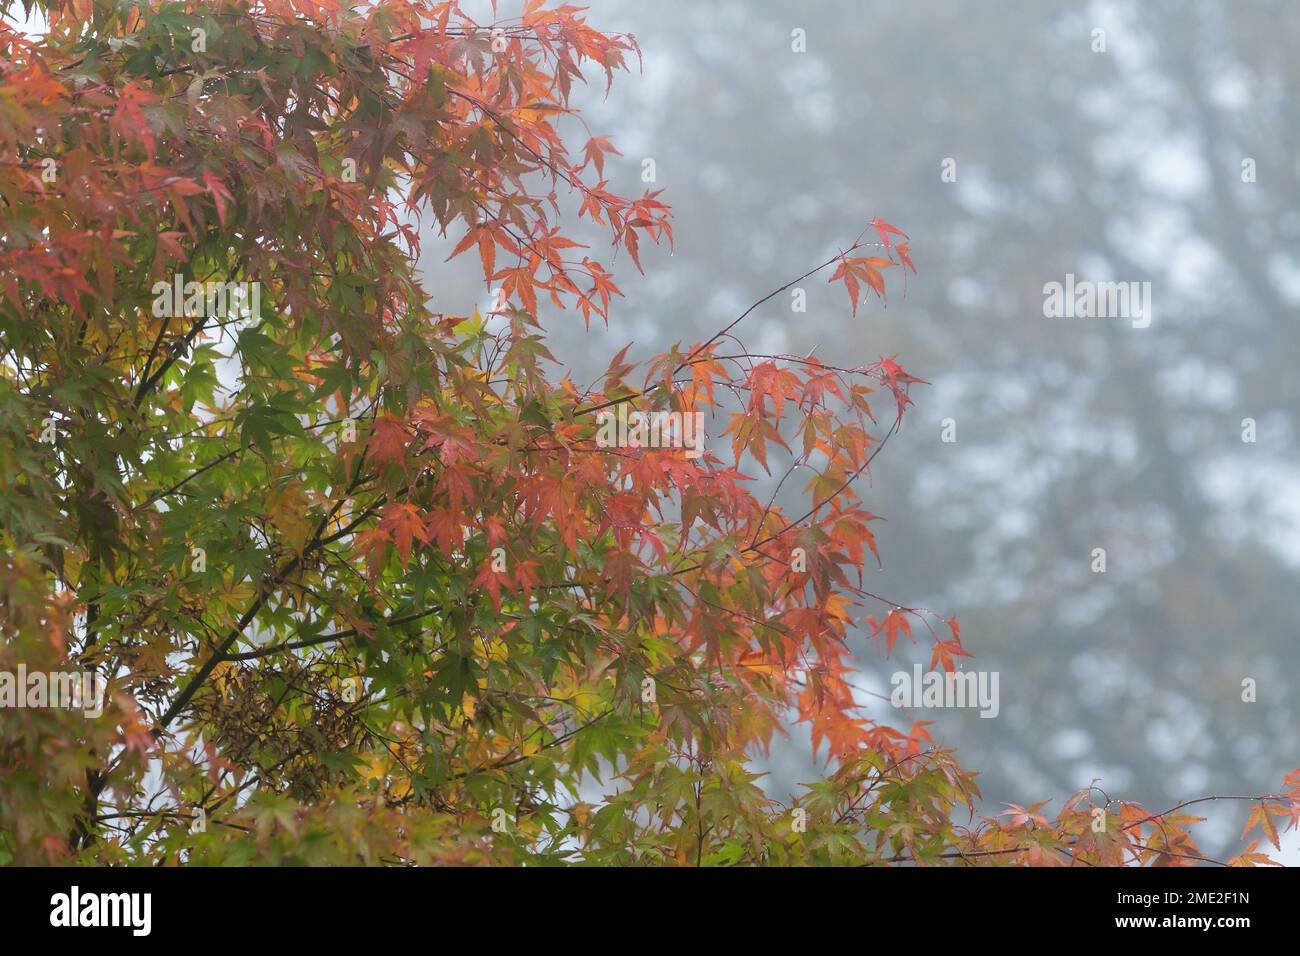 Ein acer-Baum (japanischer Ahorn) im Herbst (Herbst). Die Blätter verwandeln sich langsam in die Rottöne und Goldtöne des Herbstes. Stockfoto